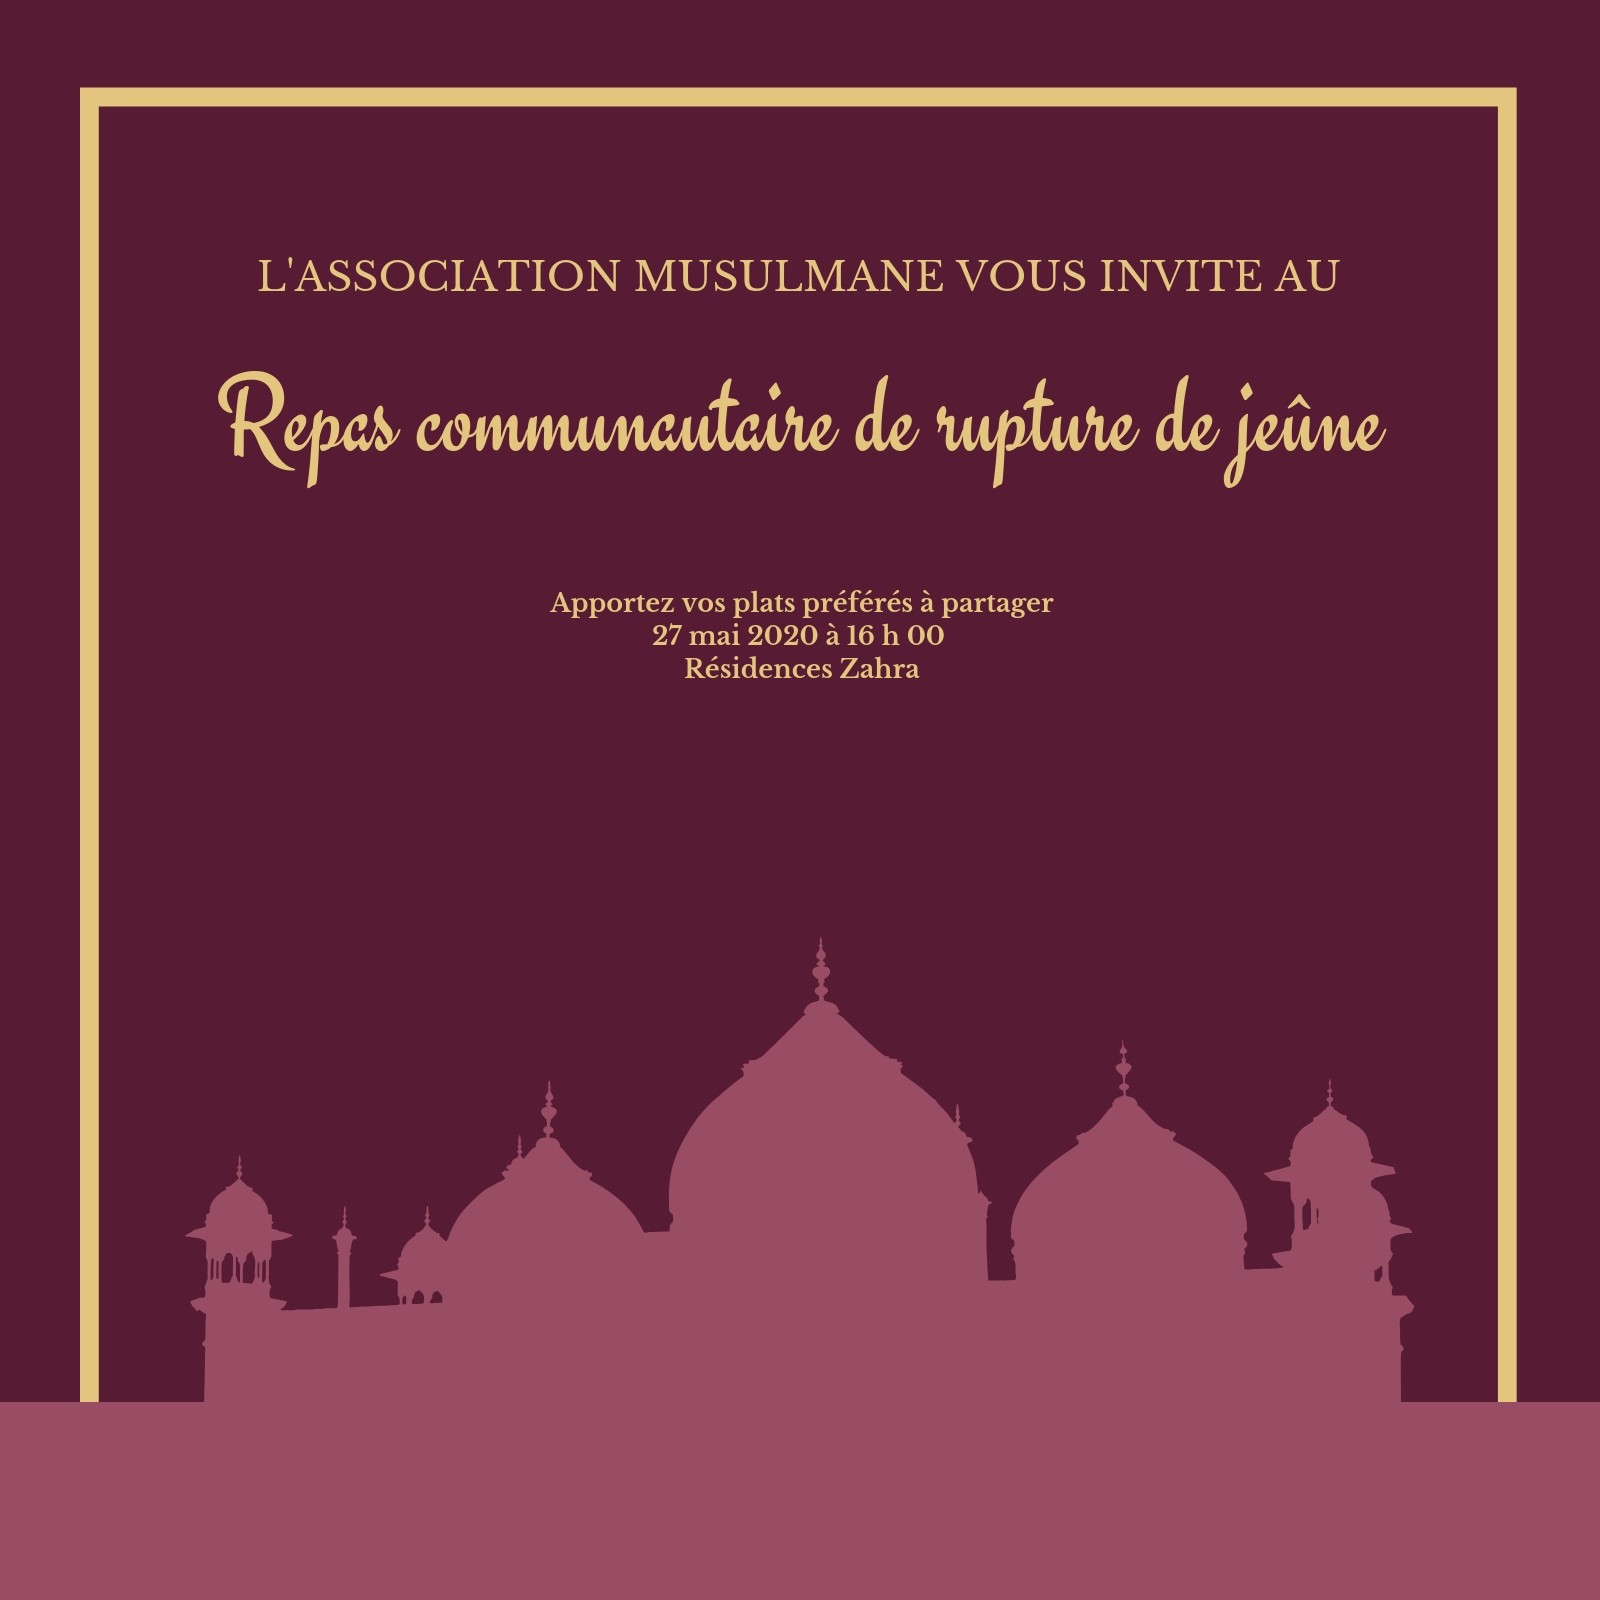 Modèle Le Calendrier Du Ramadan, La Brochure Du Calendrier Du Ramadan 2023